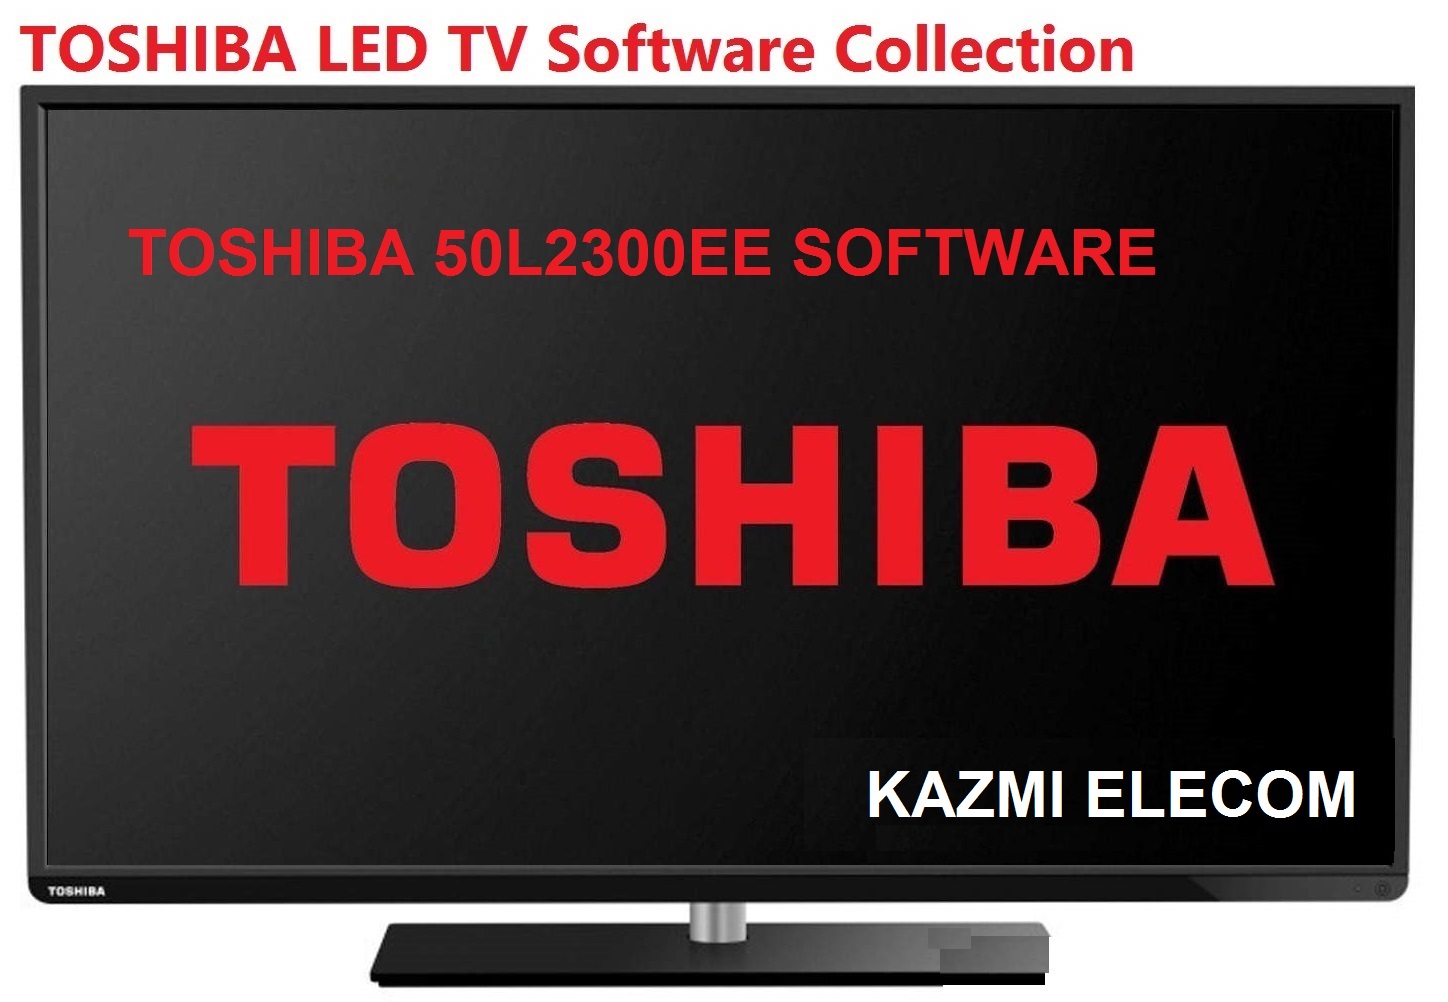 Toshiba 50L2300Ee